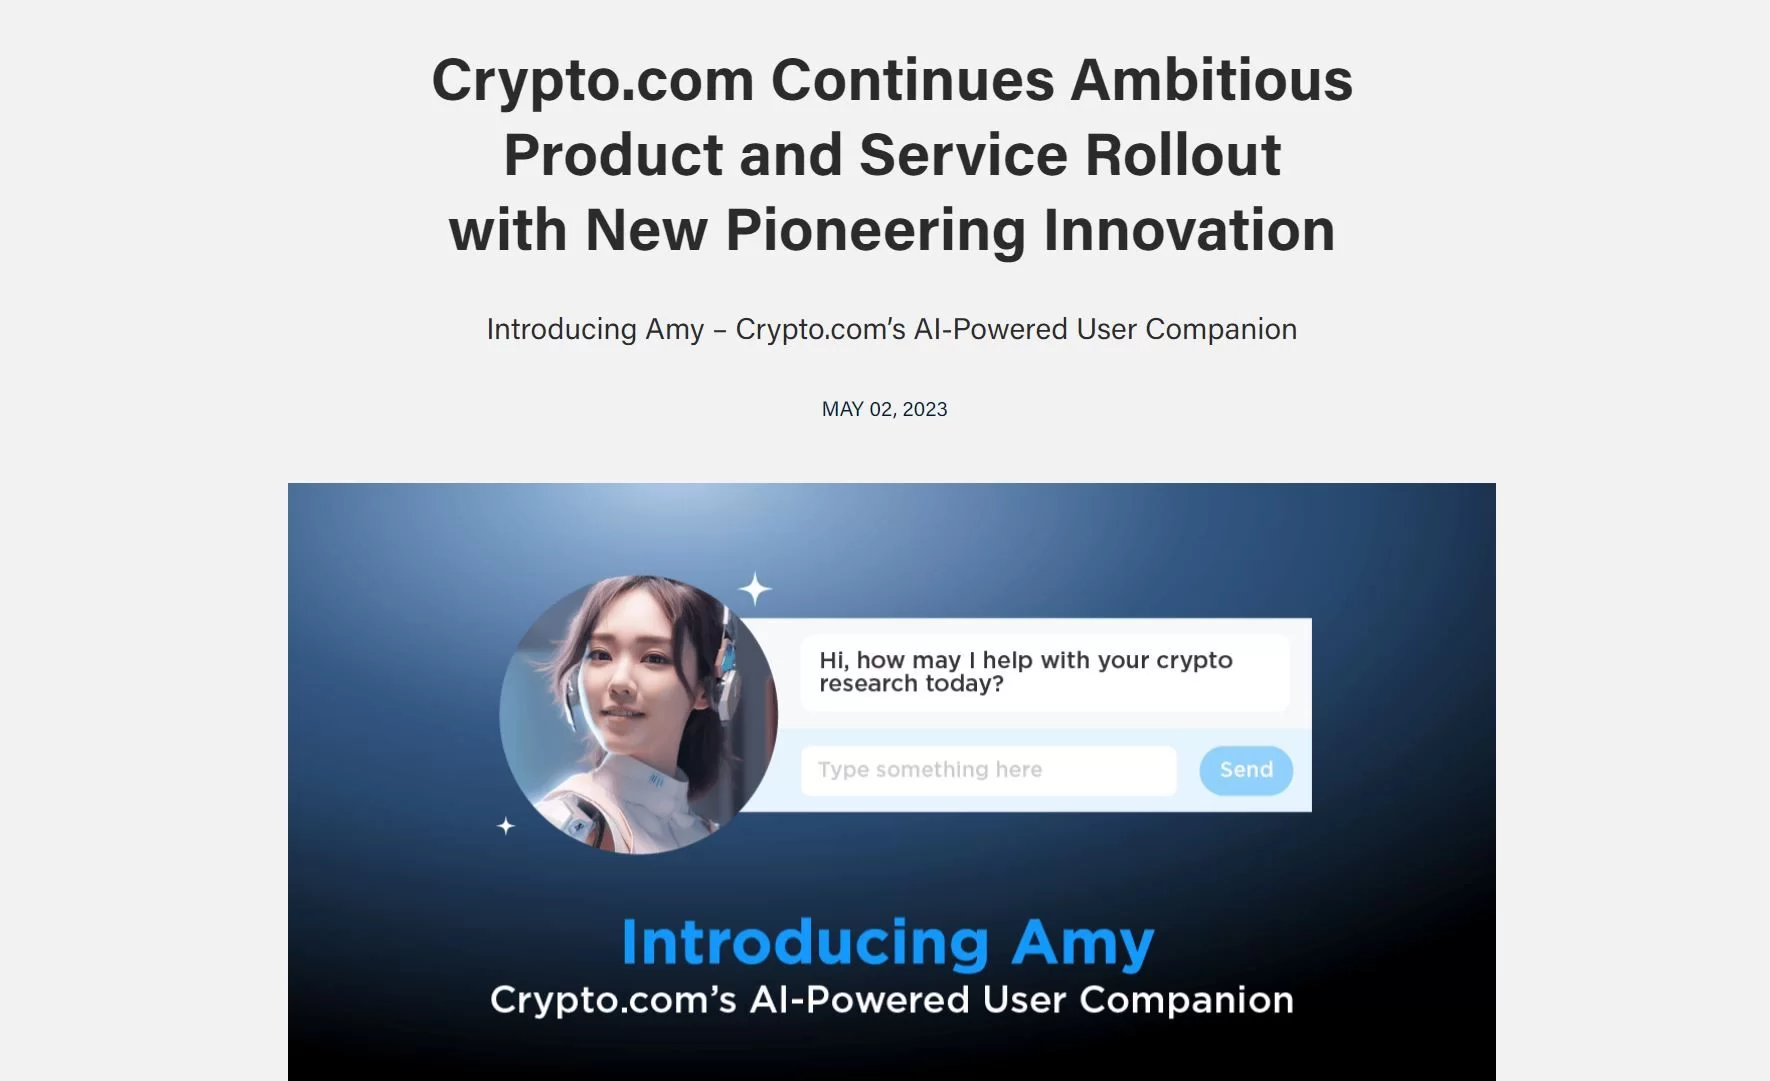 Amy by Crypto.com